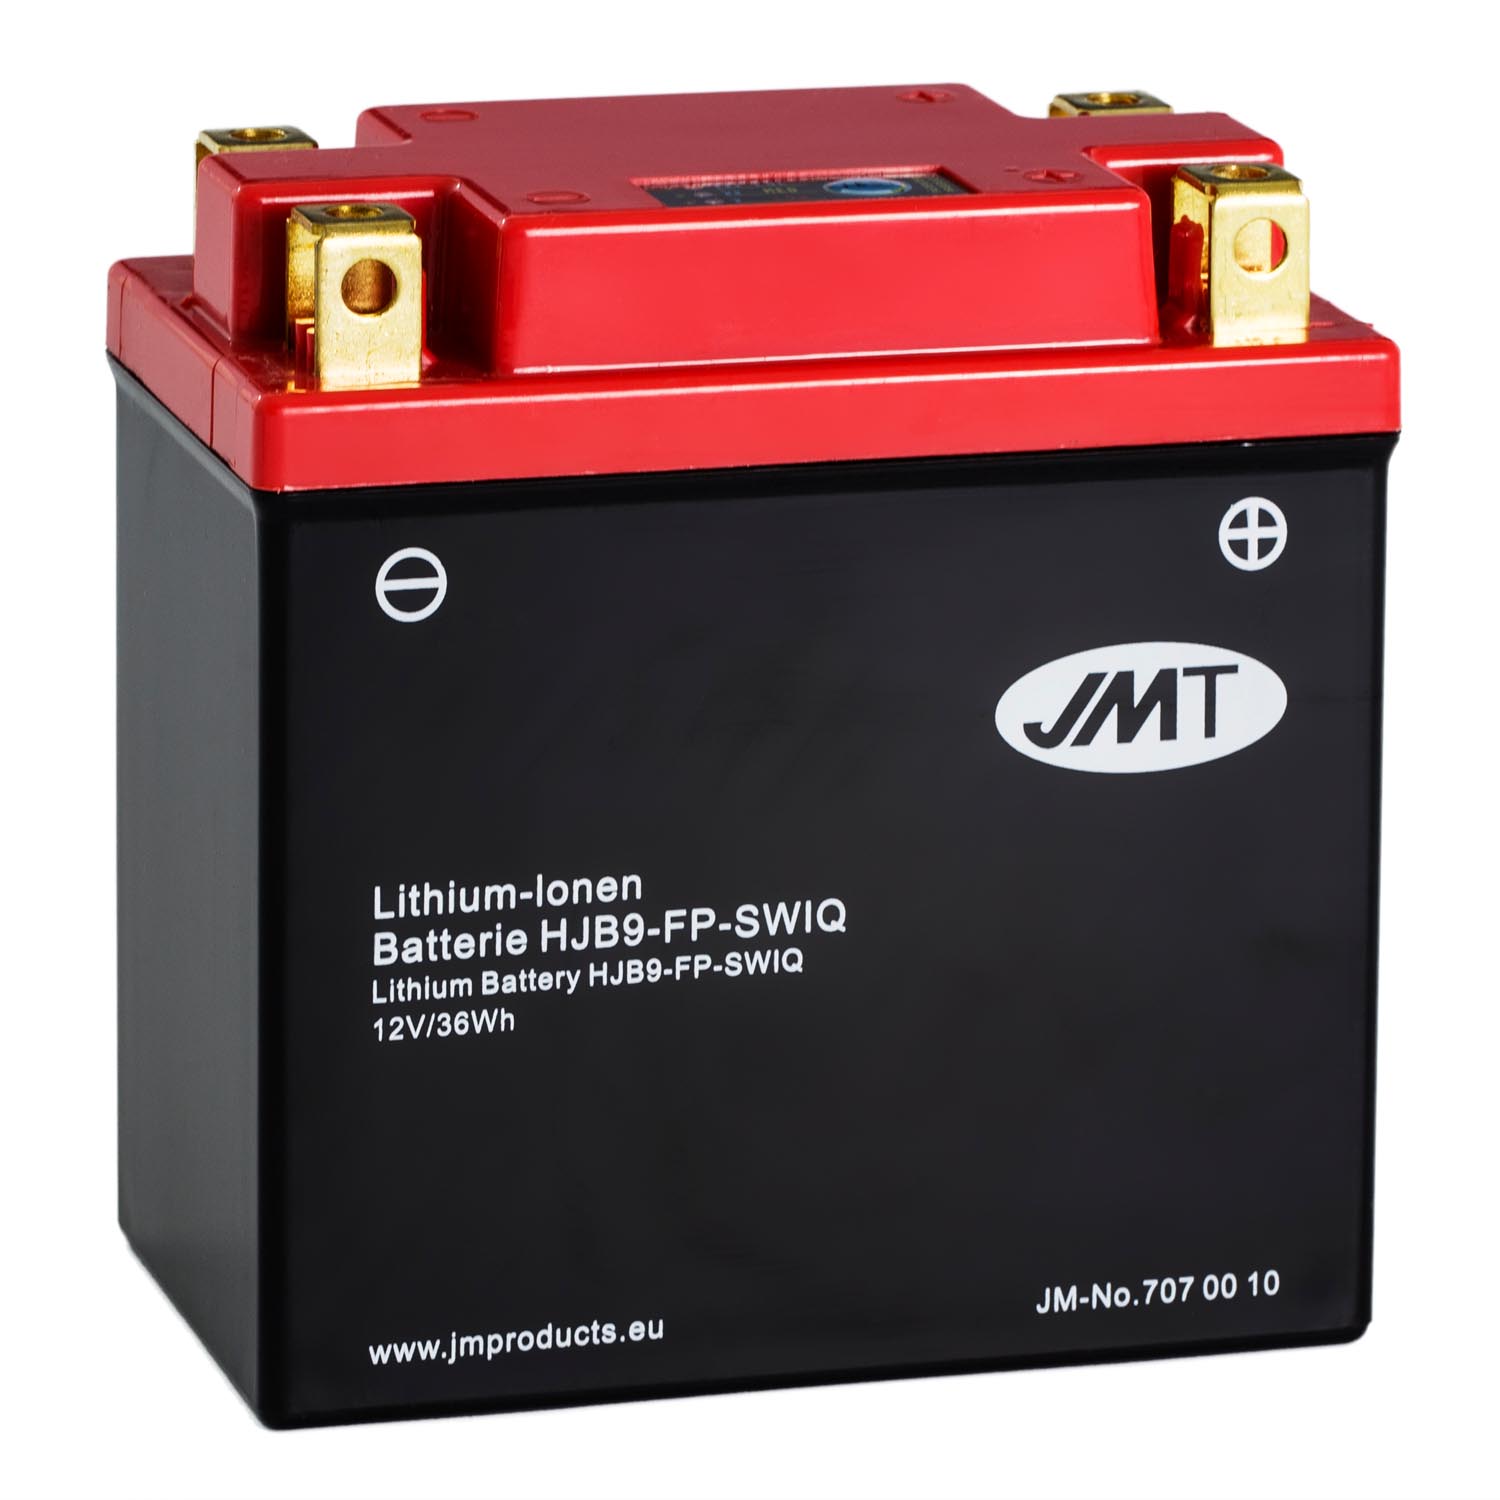 JMT Lithium-Ionen-Motorrad-Batterie HJB9-FP 12V